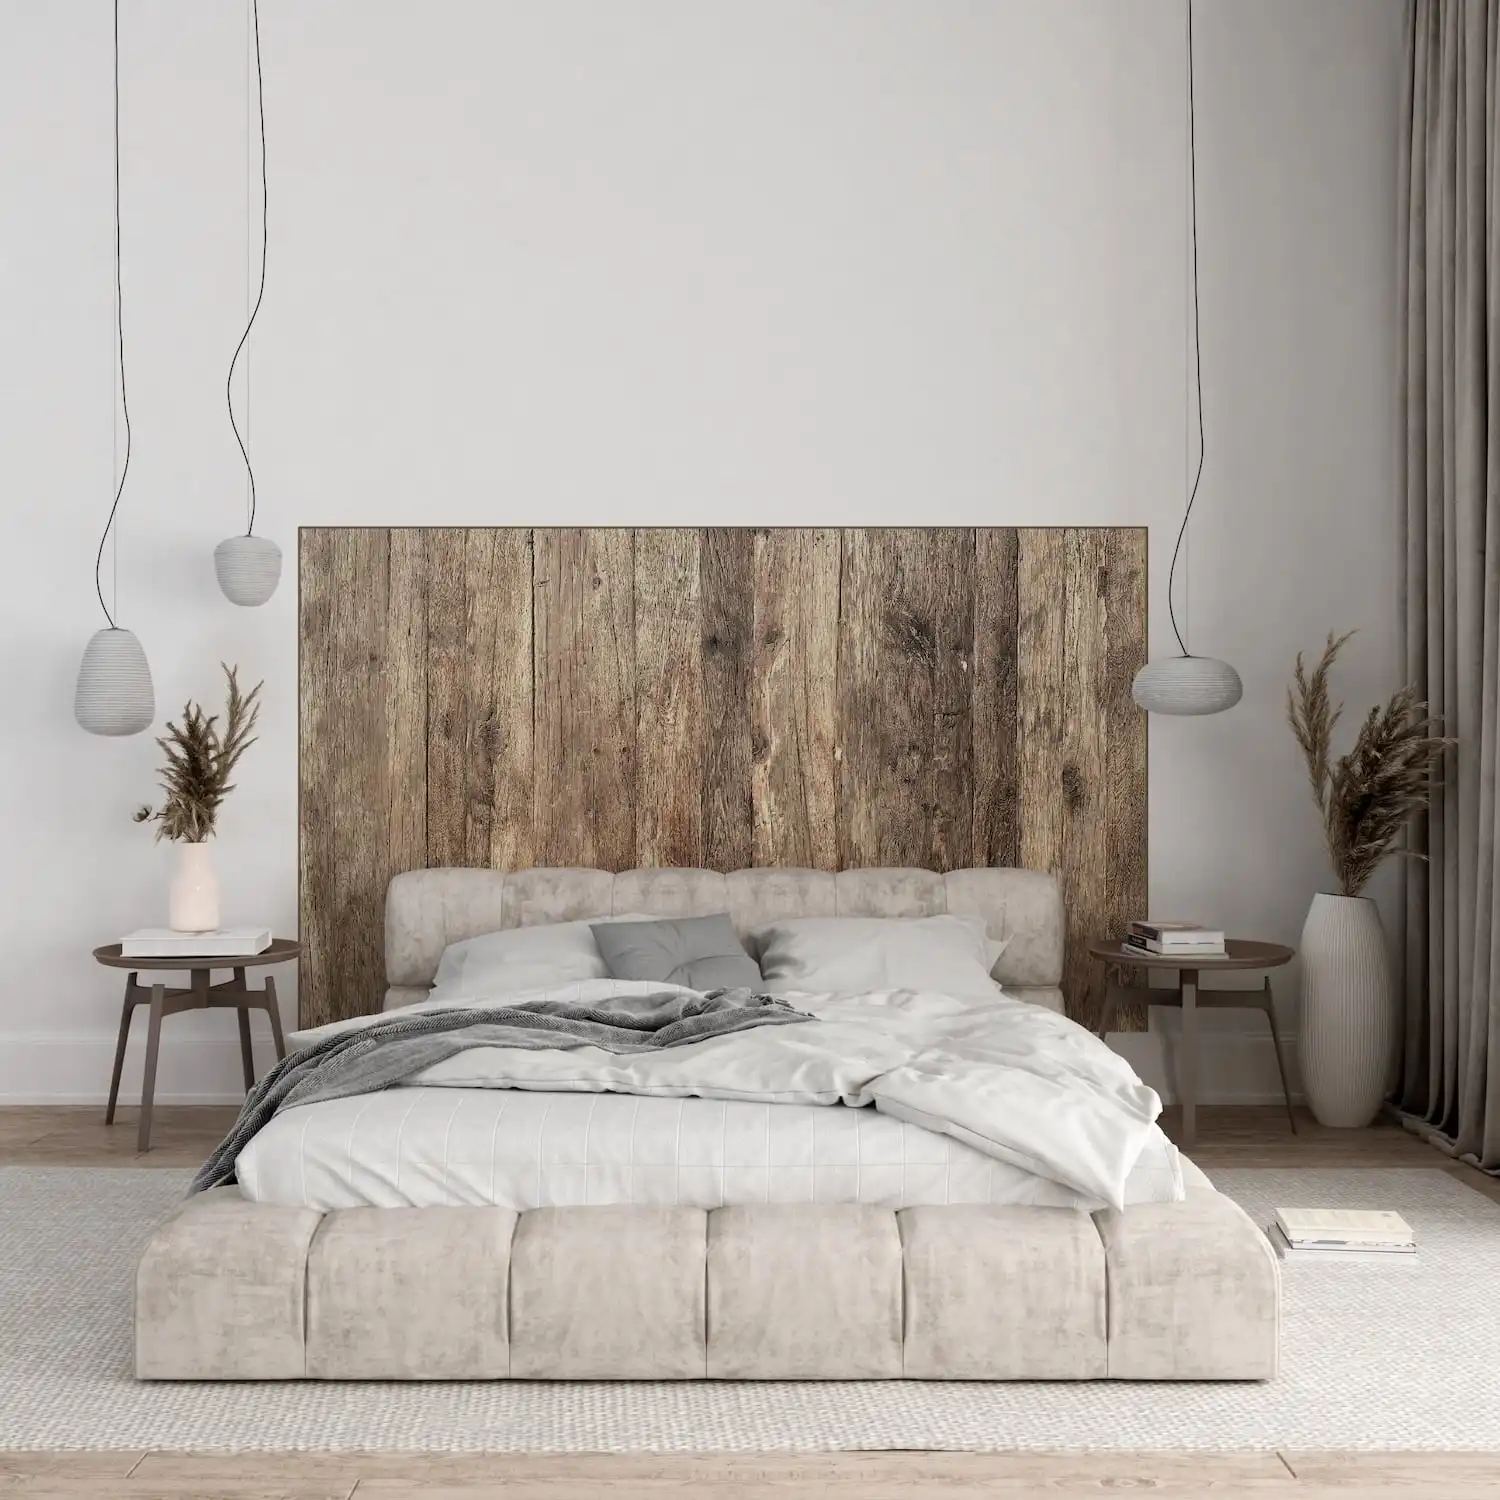  Chambre minimaliste moderne avec une tête de lit en bois rustique et une palette de couleurs neutres. 